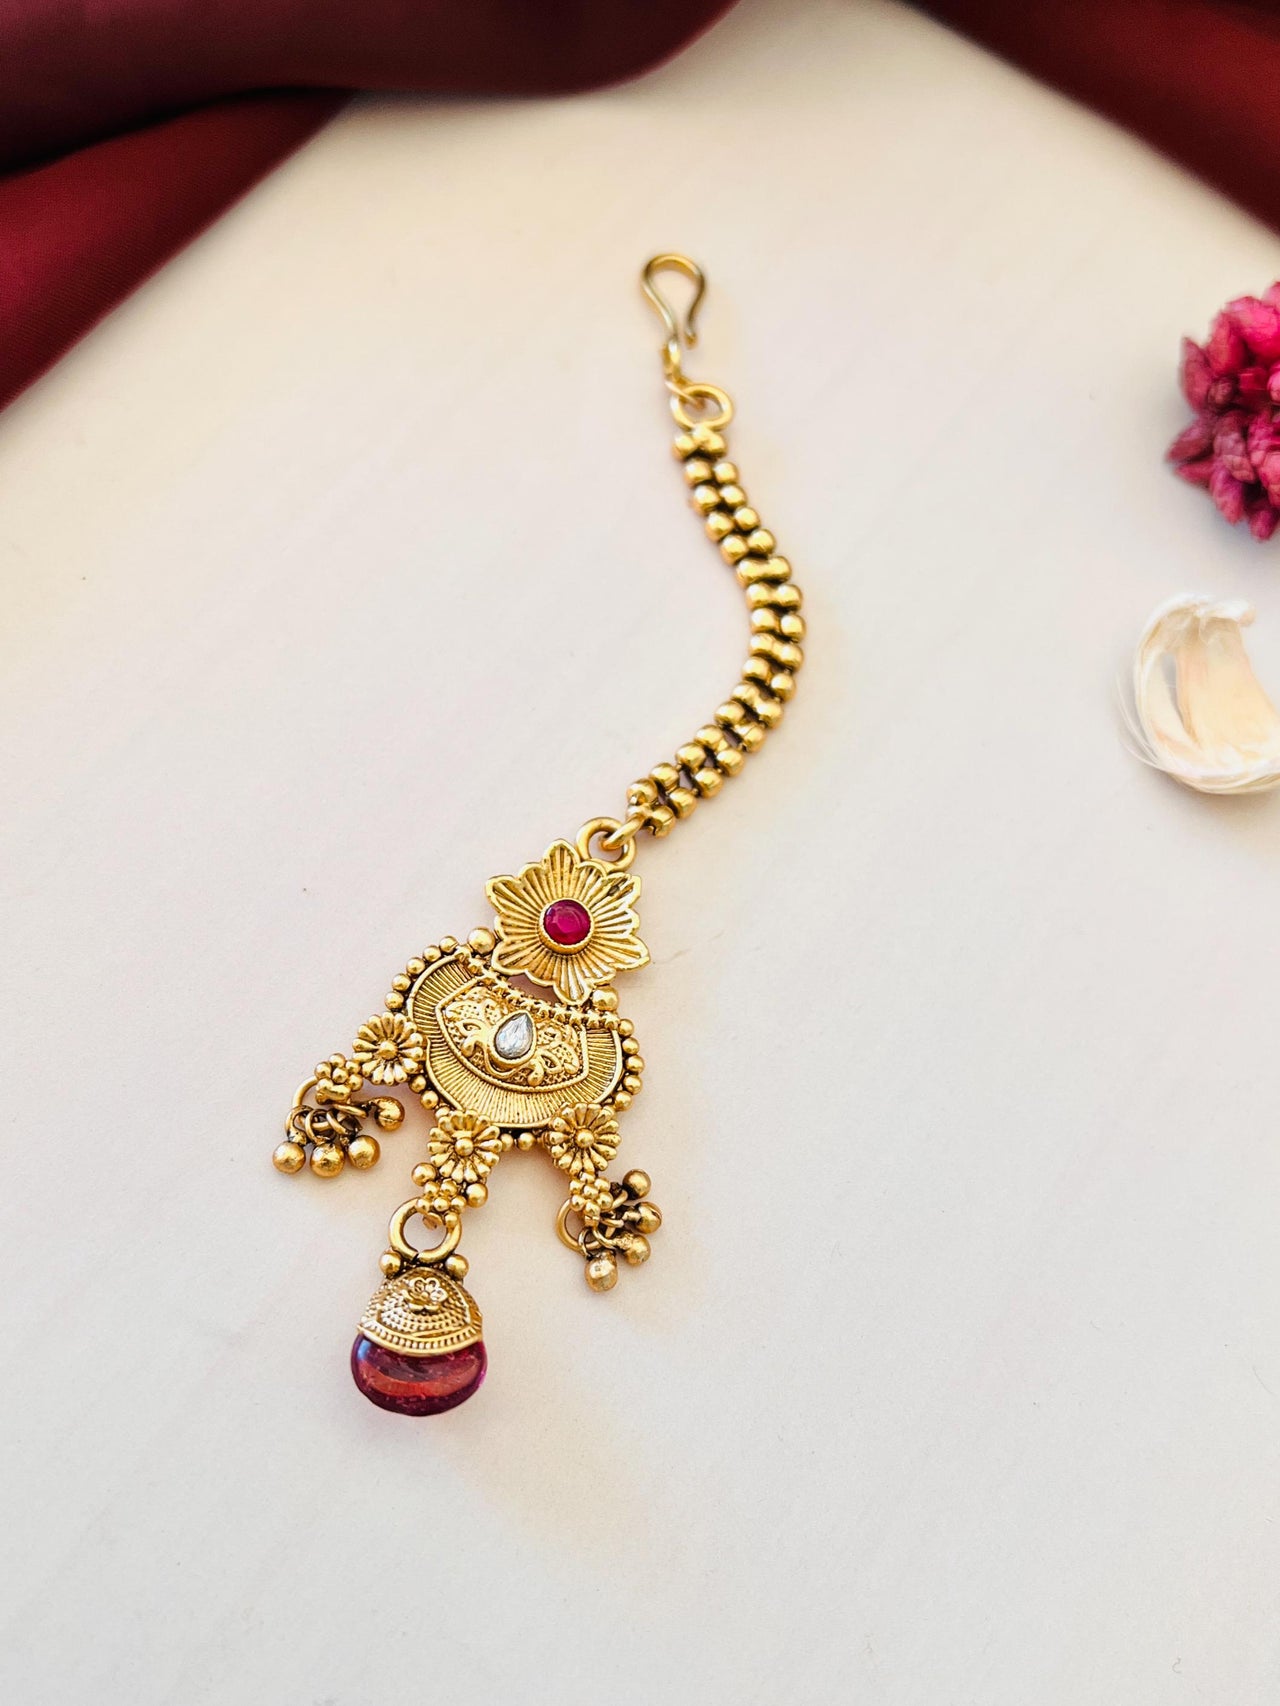 Antique Premium Wedding Necklace Combo - Abdesignsjewellery